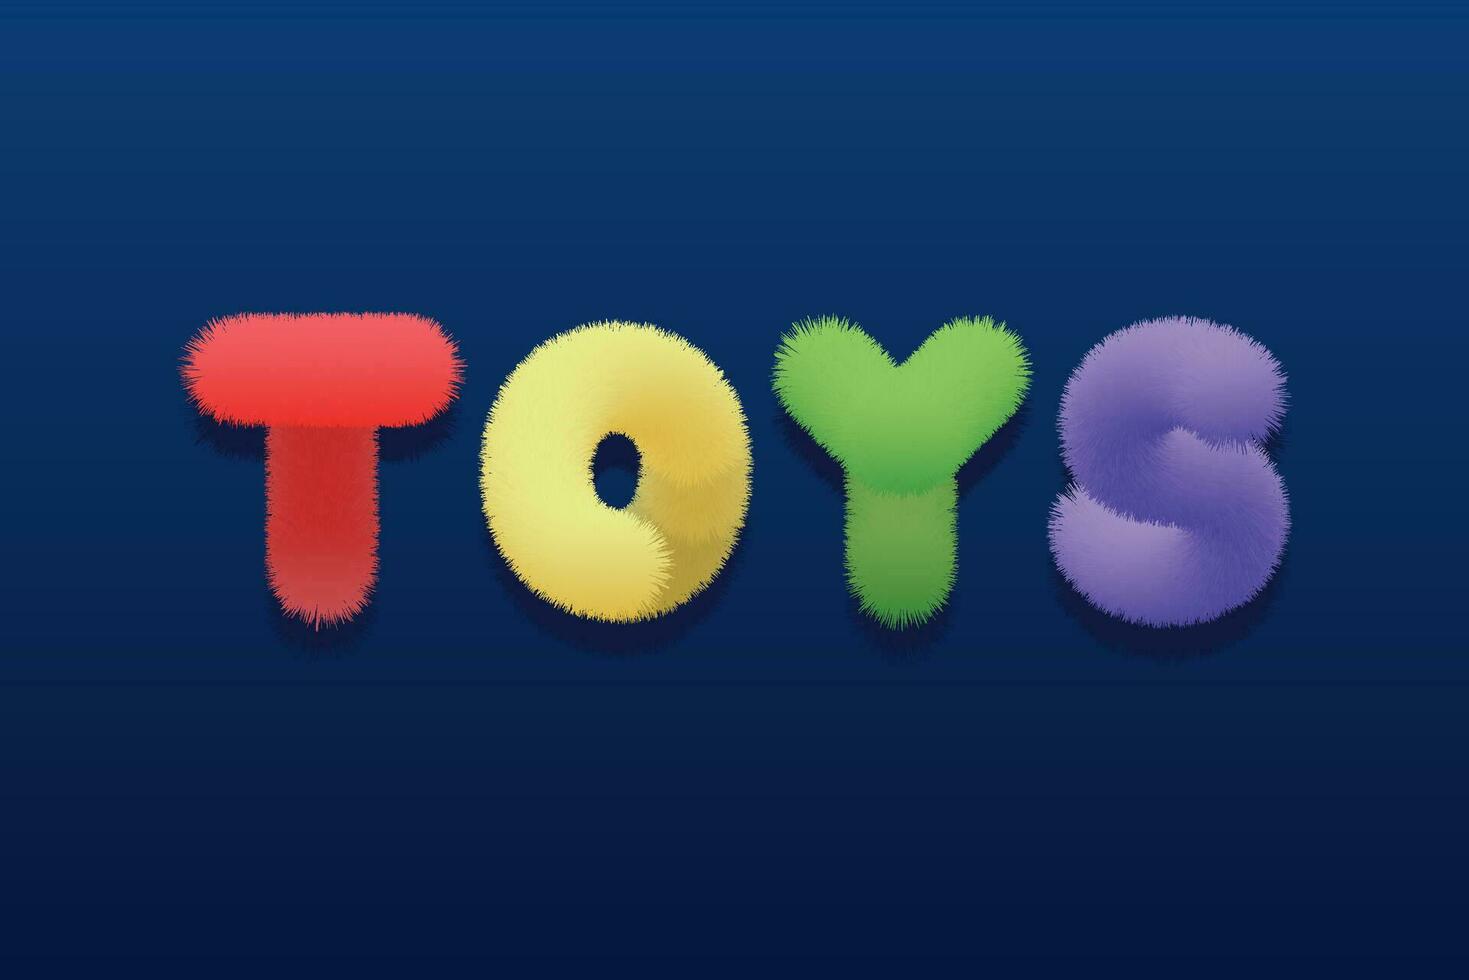 vektor isolerat text, fluffig flerfärgad ljus inskrift leksaker på en mörk blå bakgrund